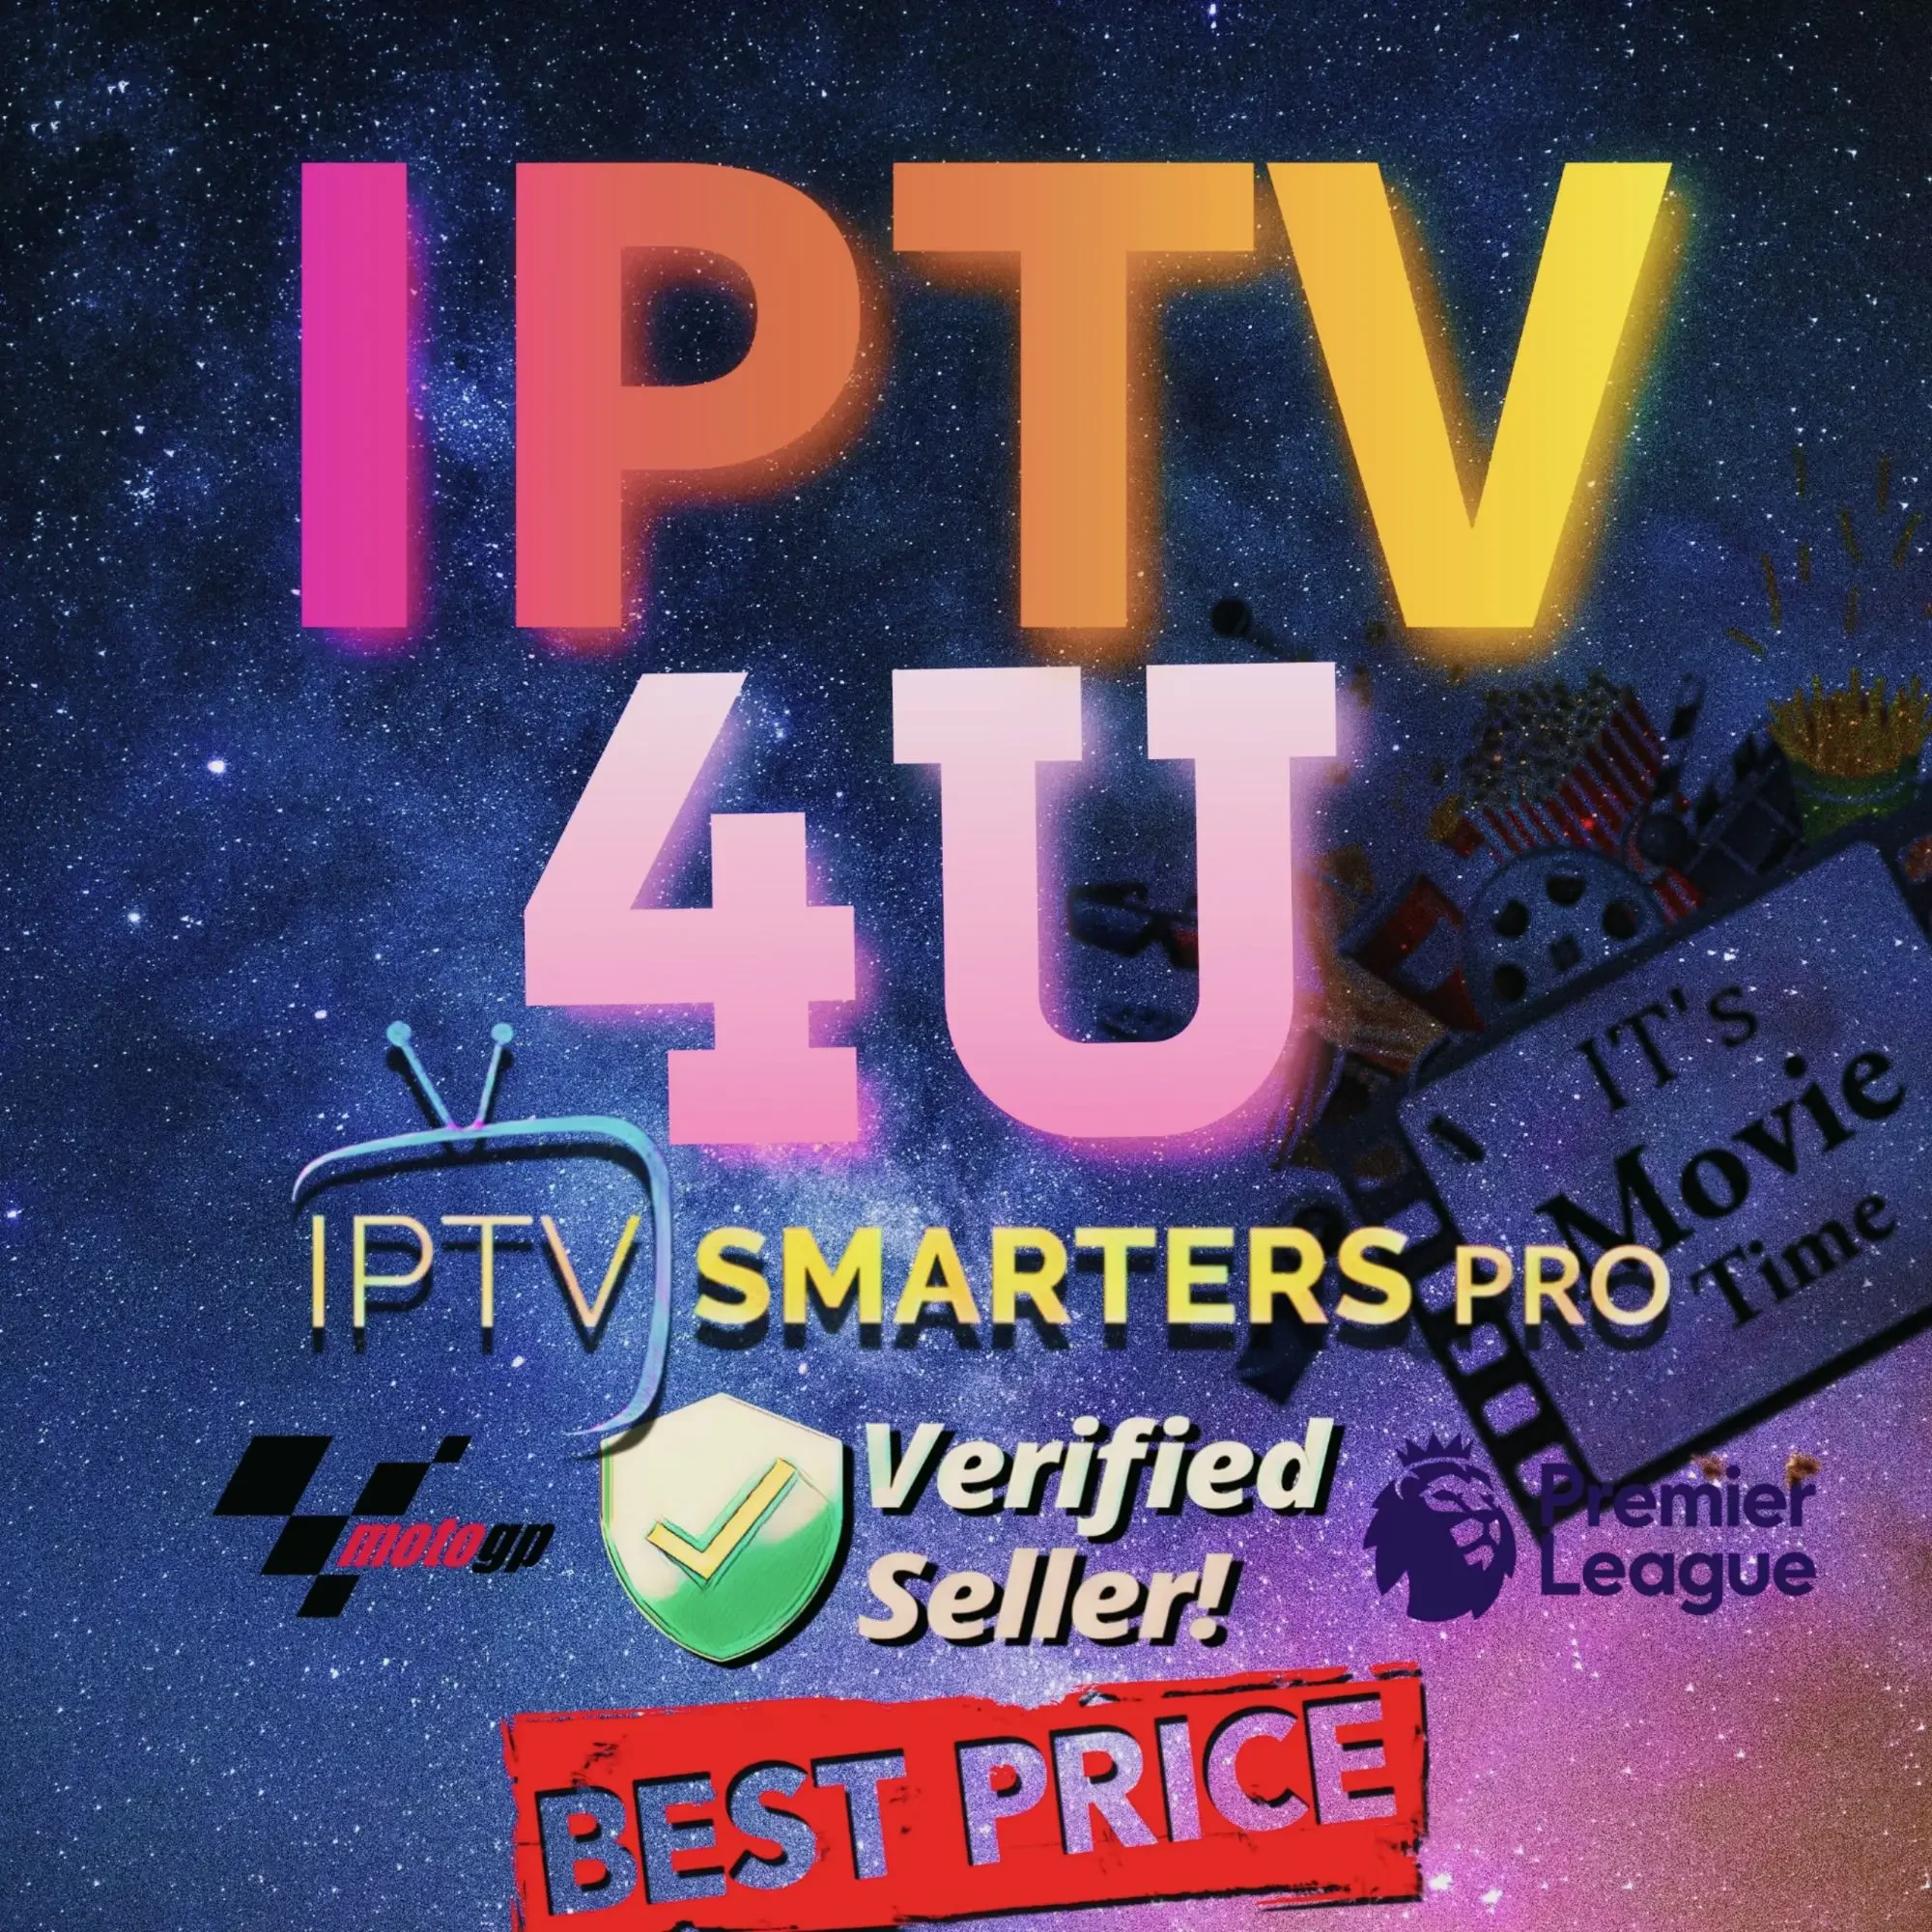 IPTV FREE TRIAL / IPTV4U FULL CHANNELS / IPTV SMARTER PRO